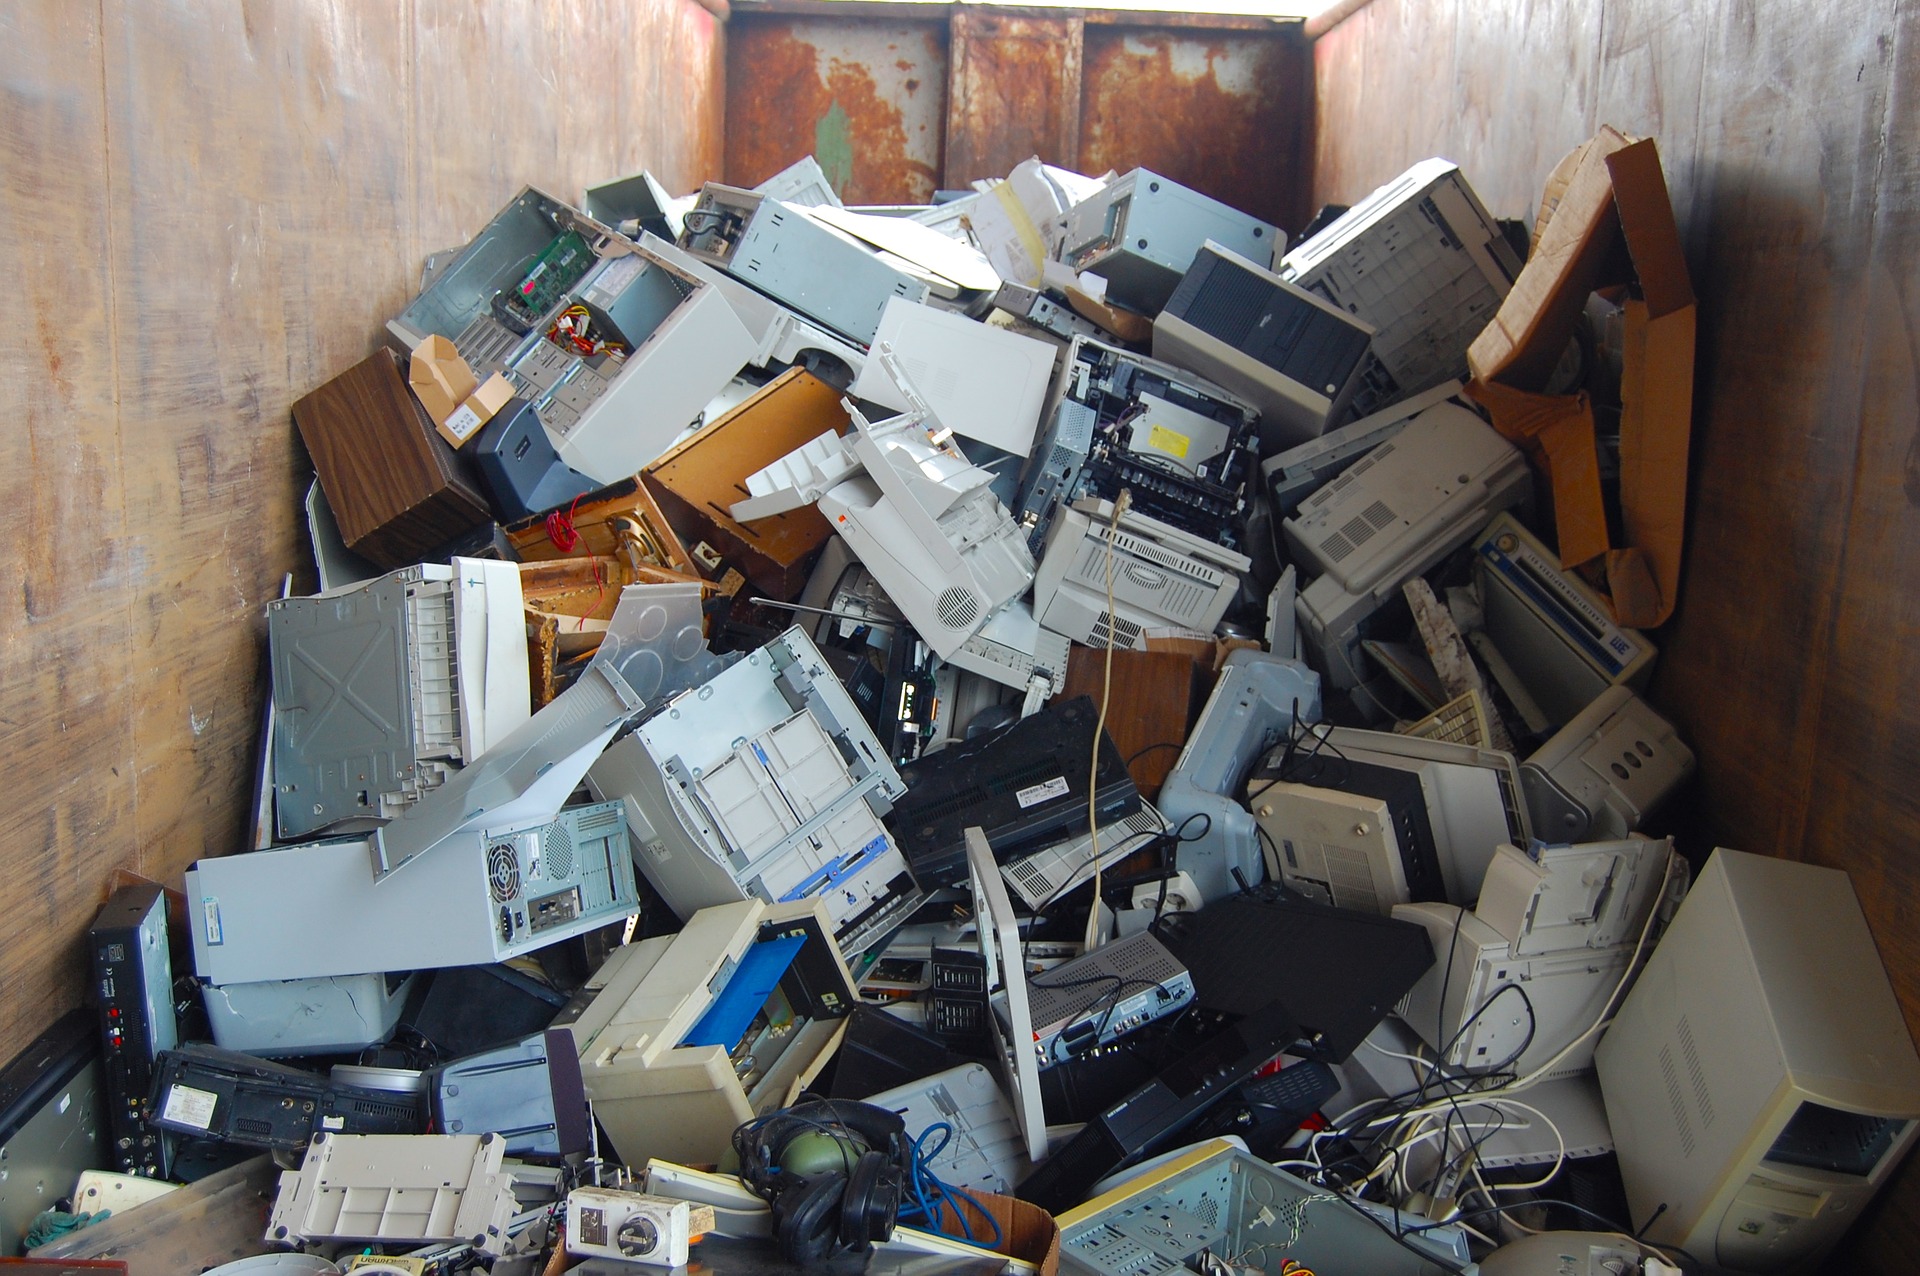 pile of broken computers